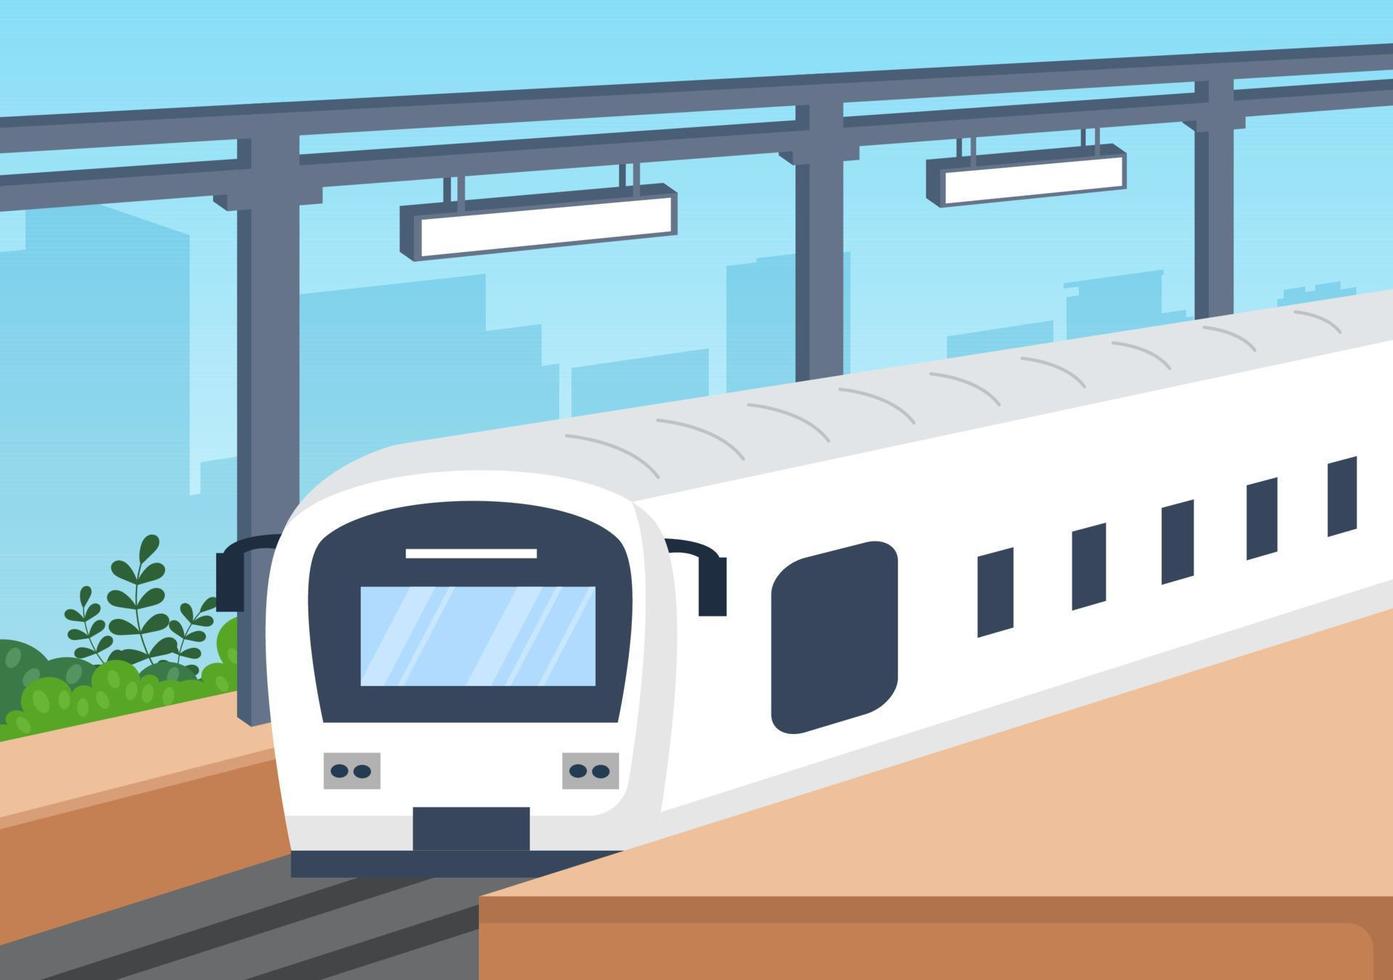 stazione ferroviaria con scenario di trasporto ferroviario, piattaforma per la partenza e metropolitana interna sotterranea nell'illustrazione del manifesto di fondo piatto vettore